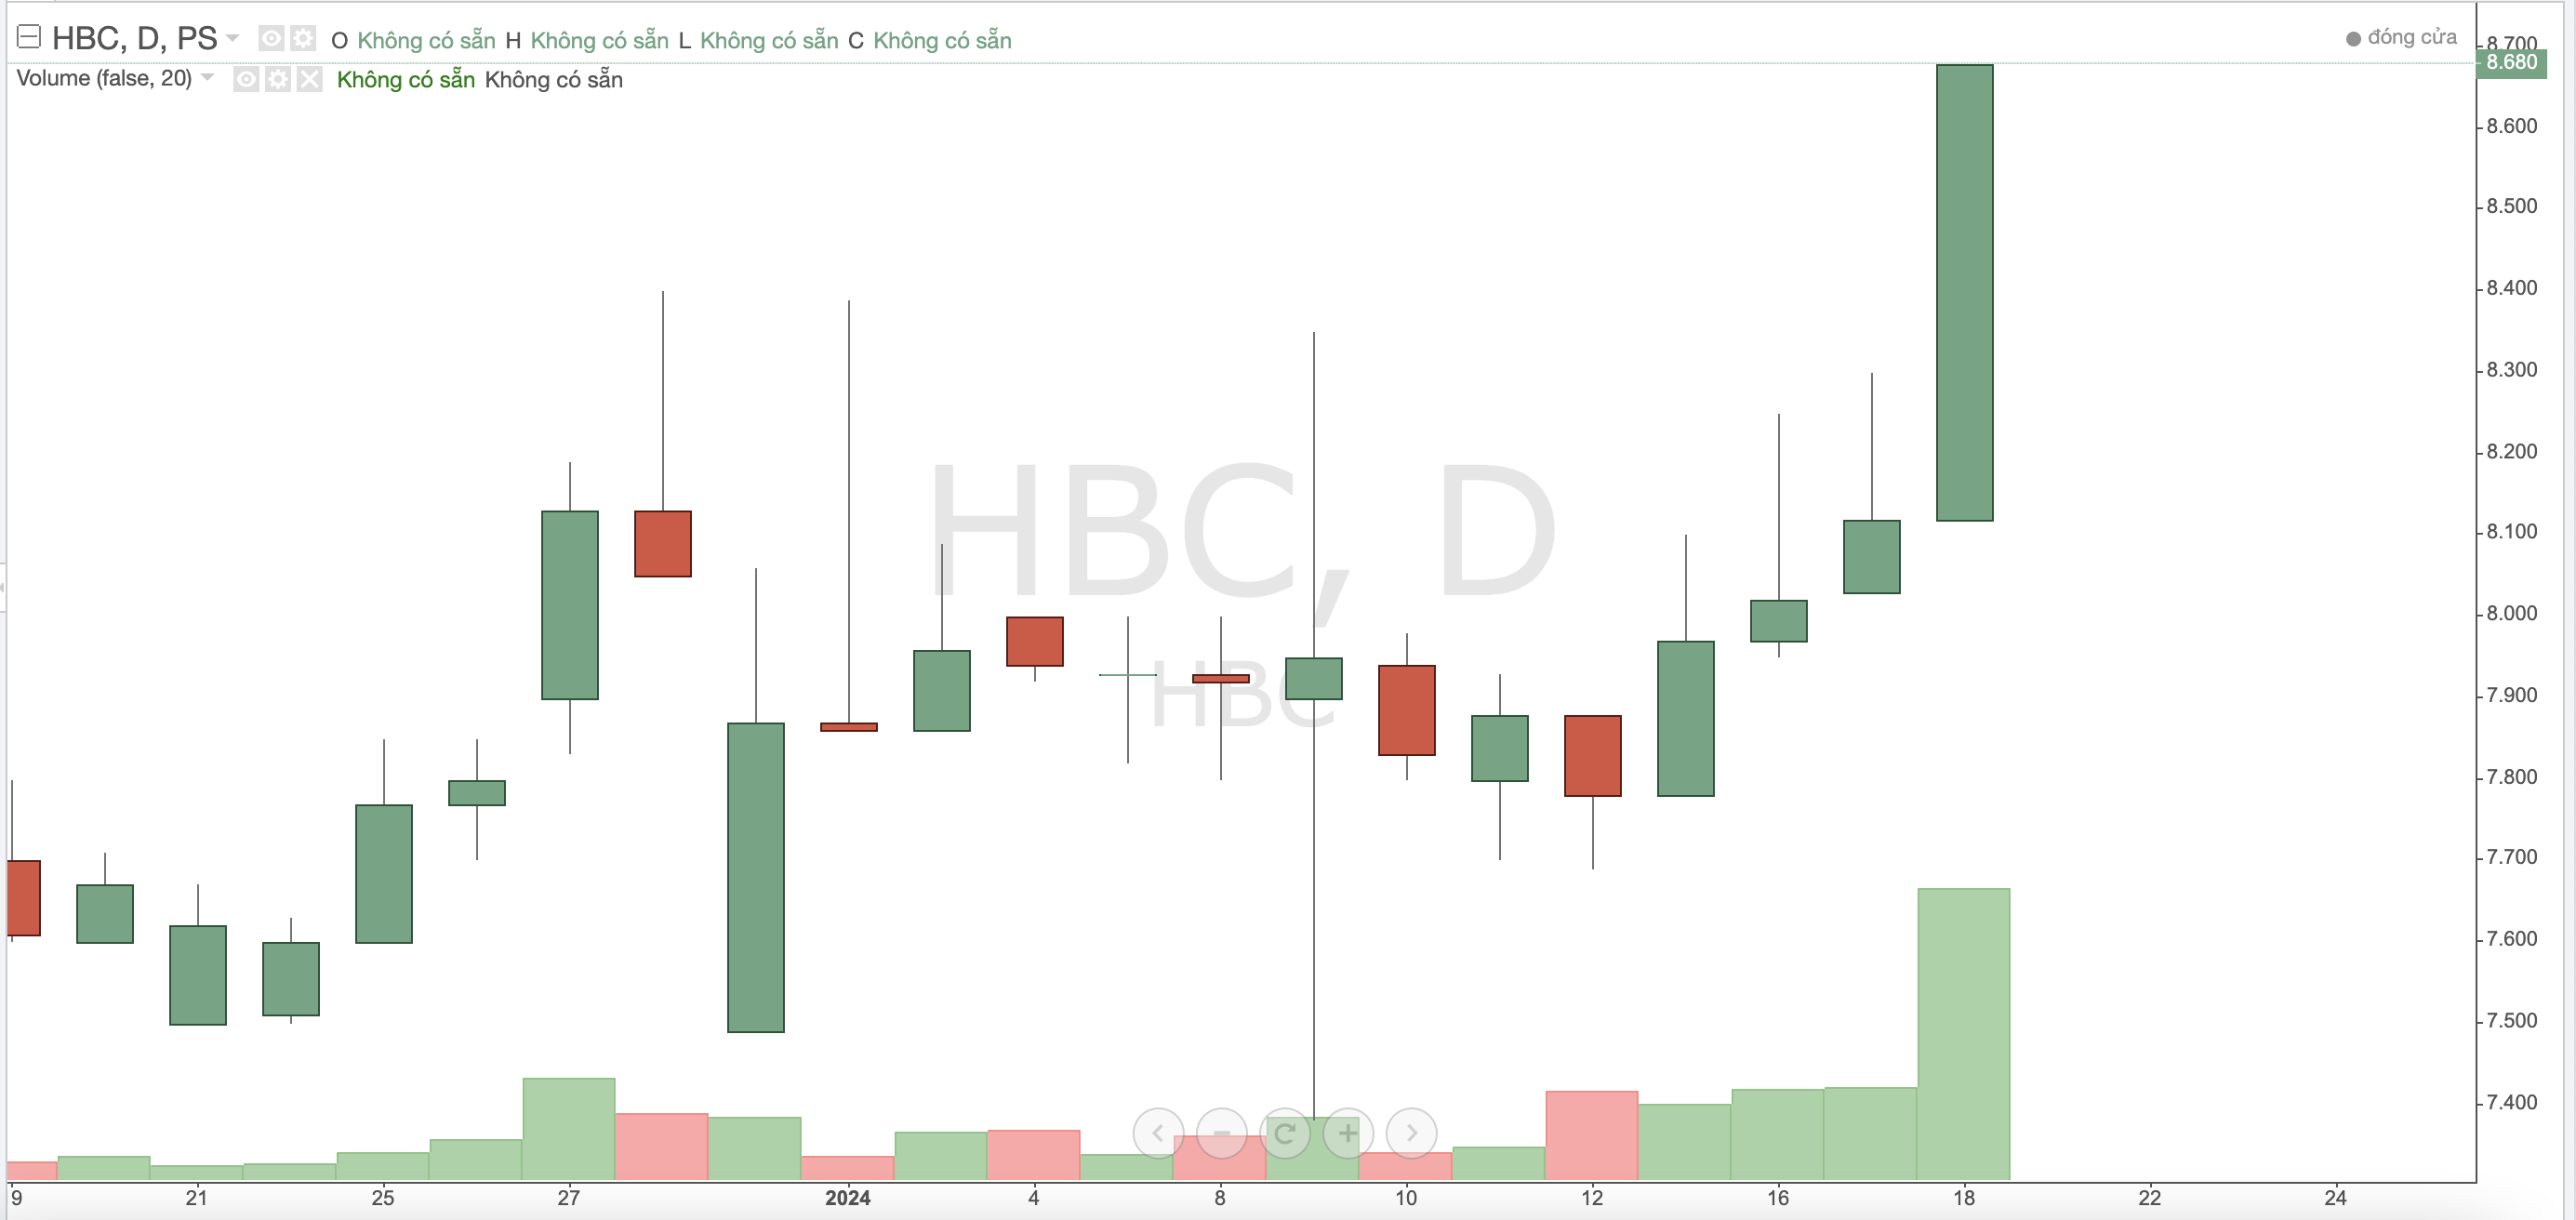 Thoát khỏi diện hạn chế, cổ phiếu HBC được giao dịch toàn thời gian từ ngày 19/1